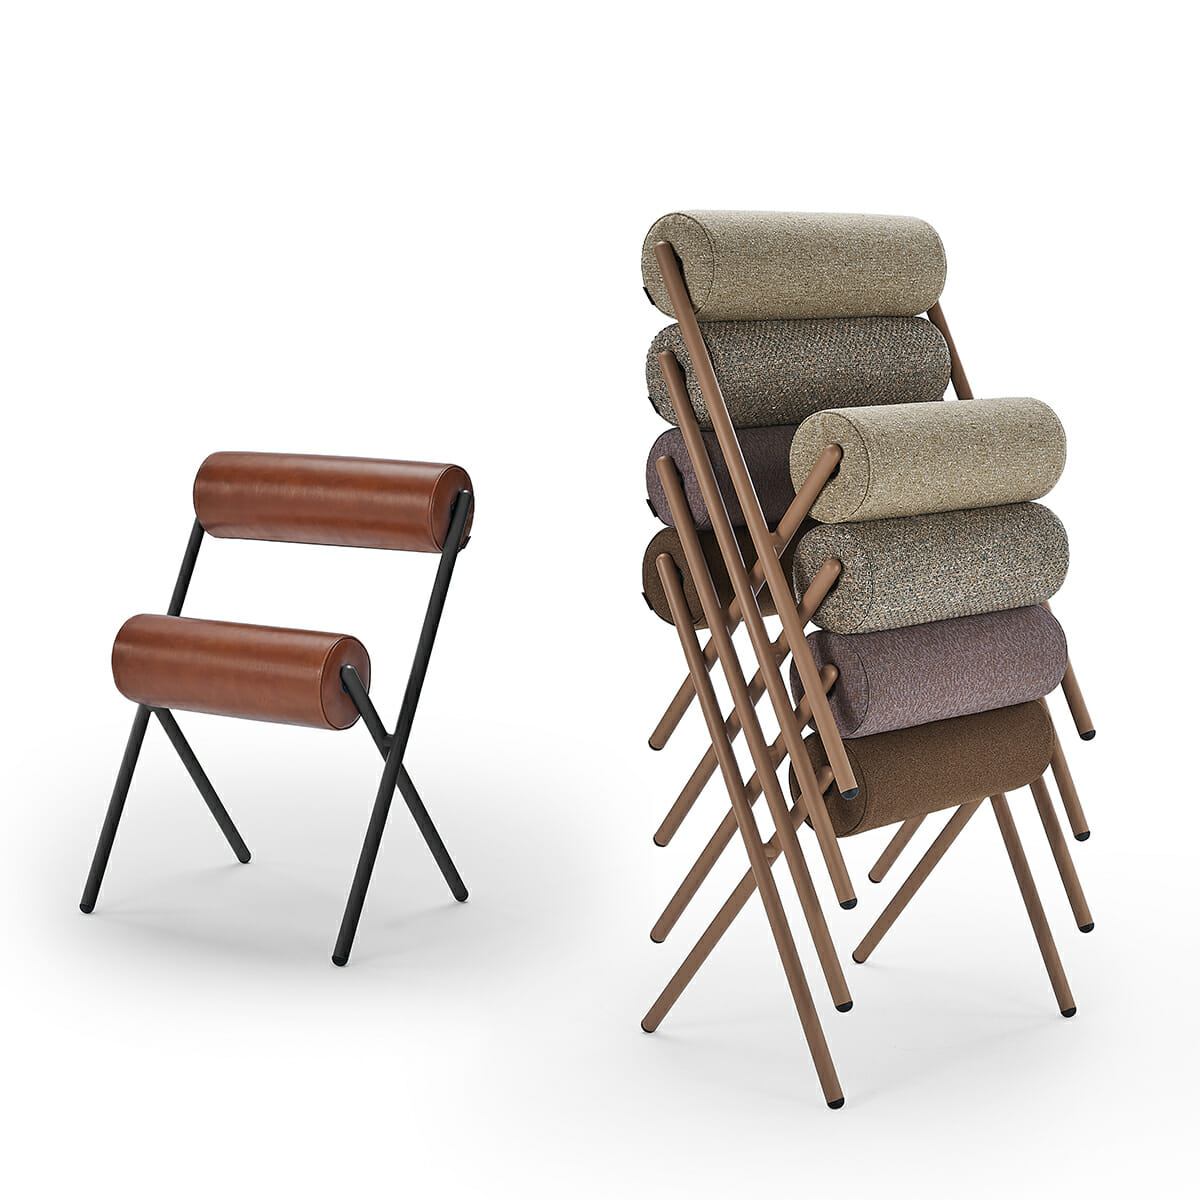 Mueble de España - Products - MULLIT chair